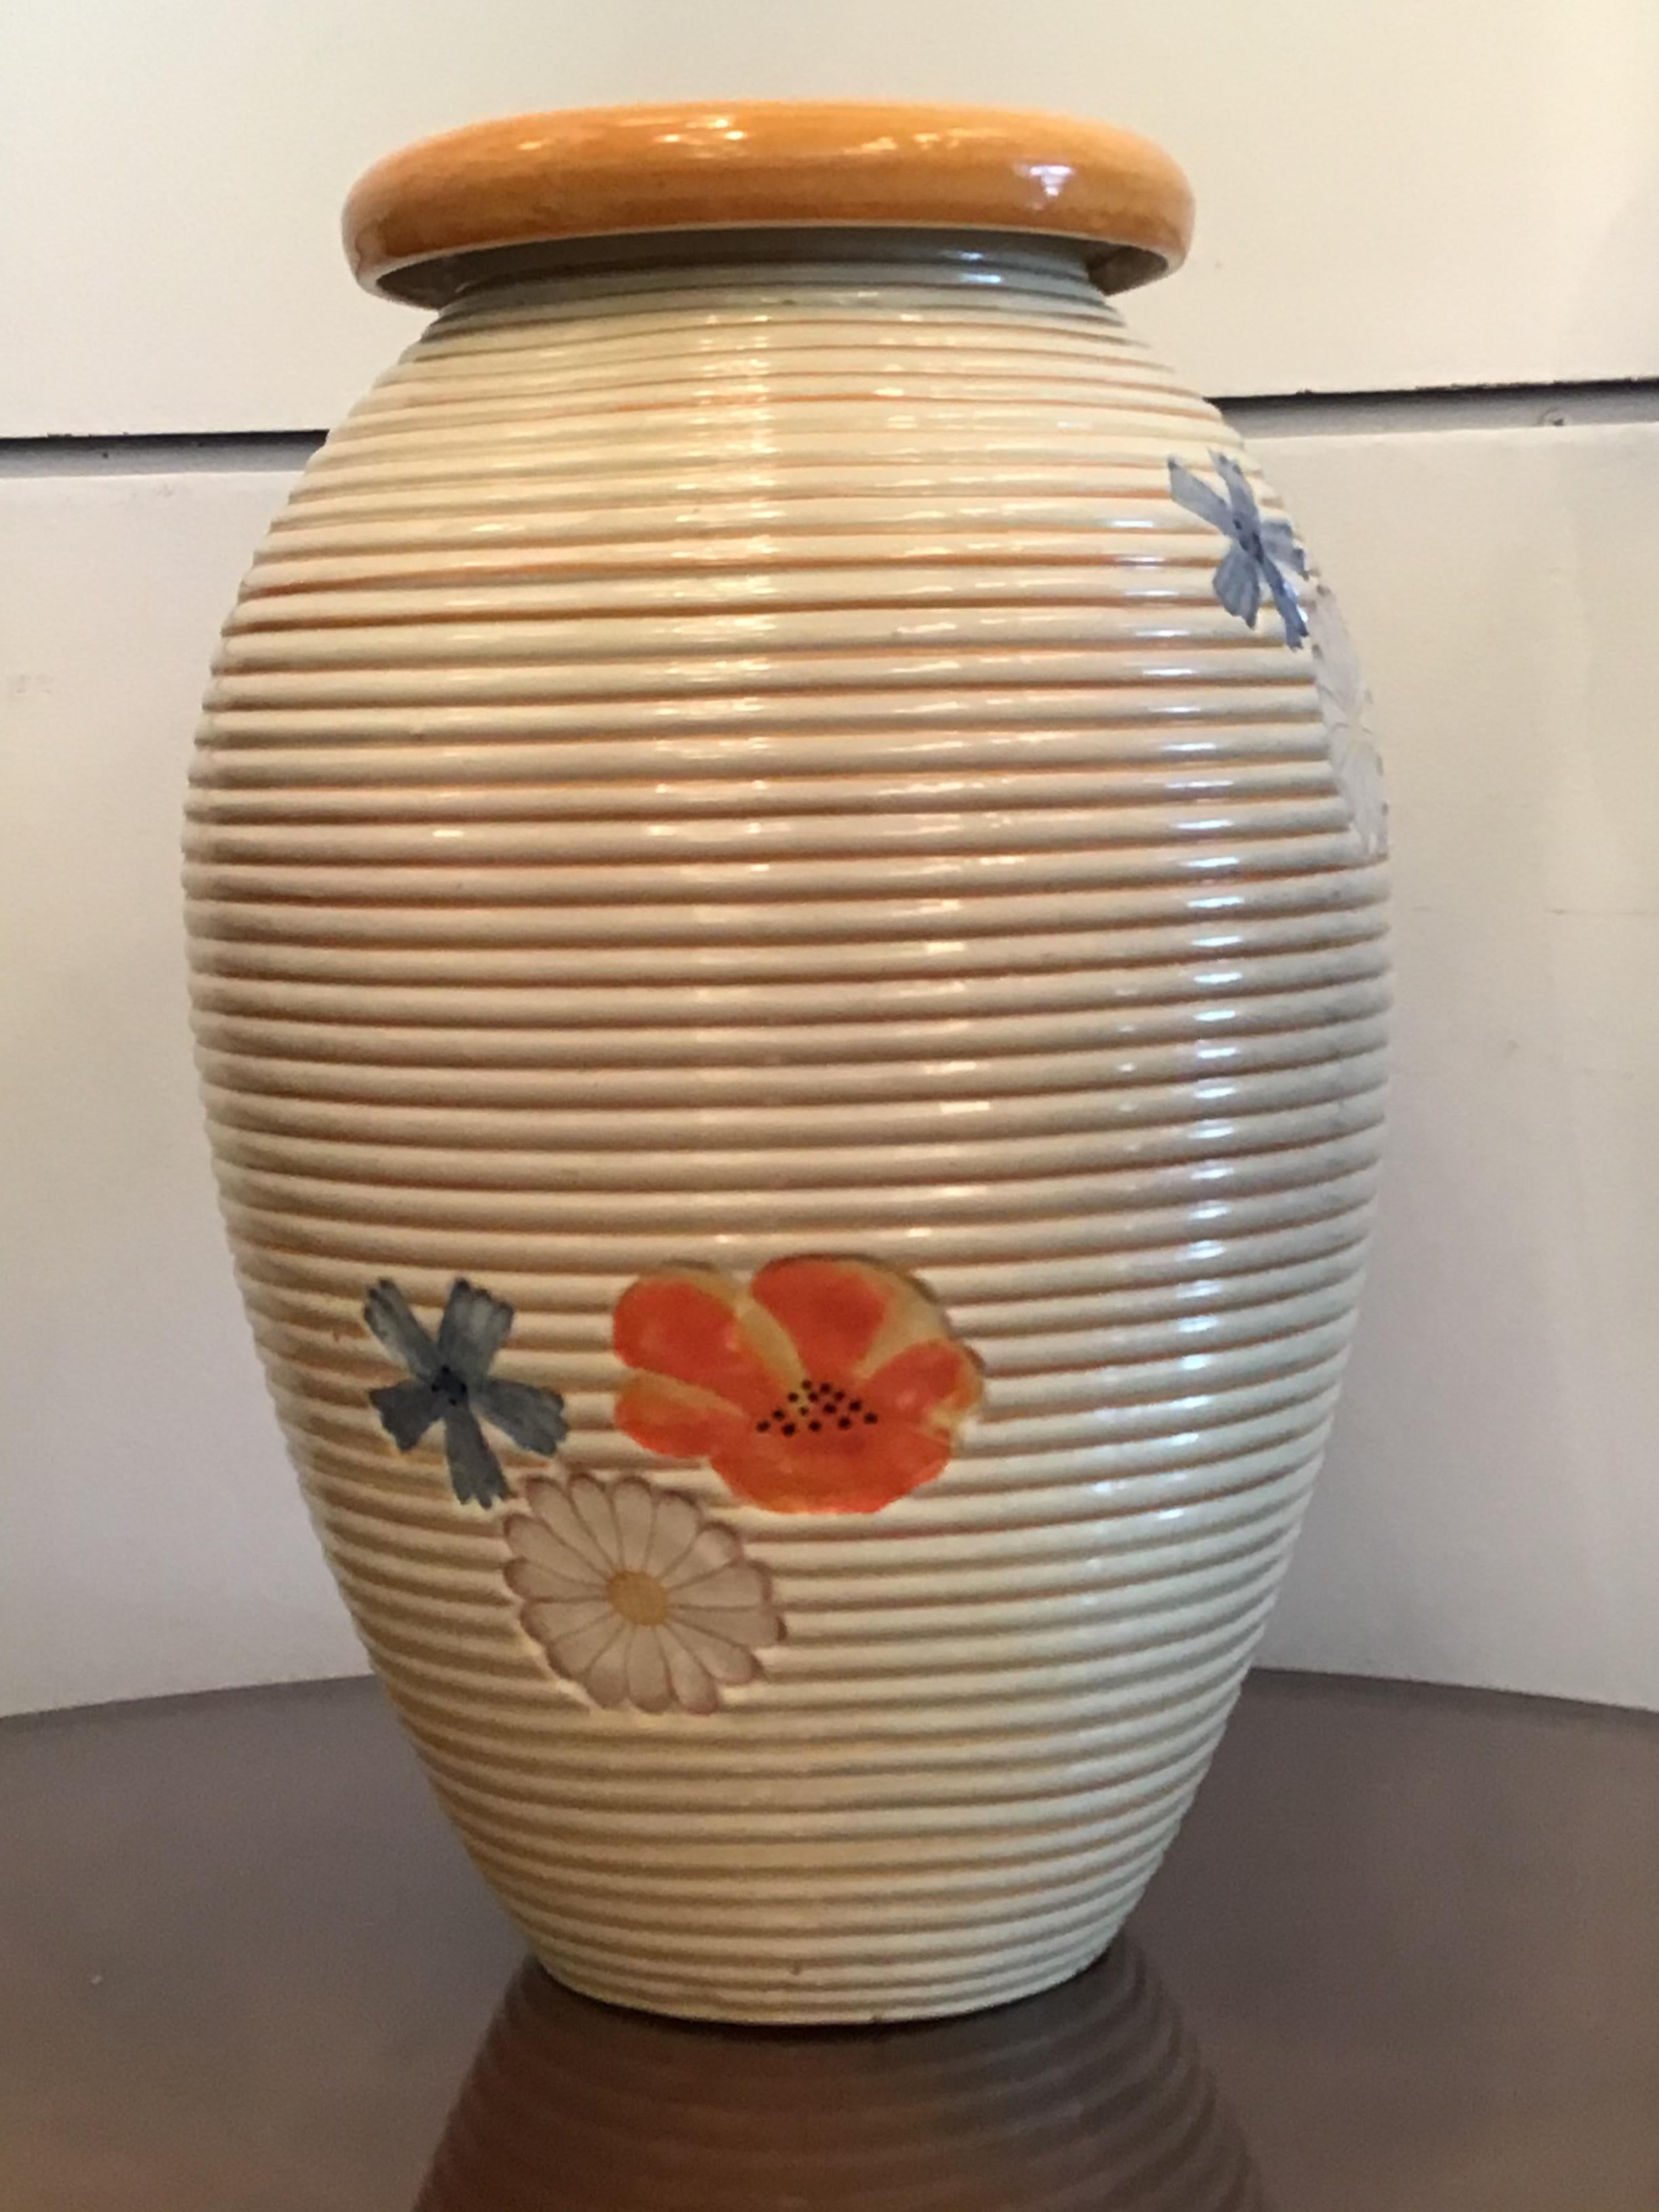 Pucci Umbertide Vase /Umbrella Stand Ceramic, 1950, Italy For Sale 6